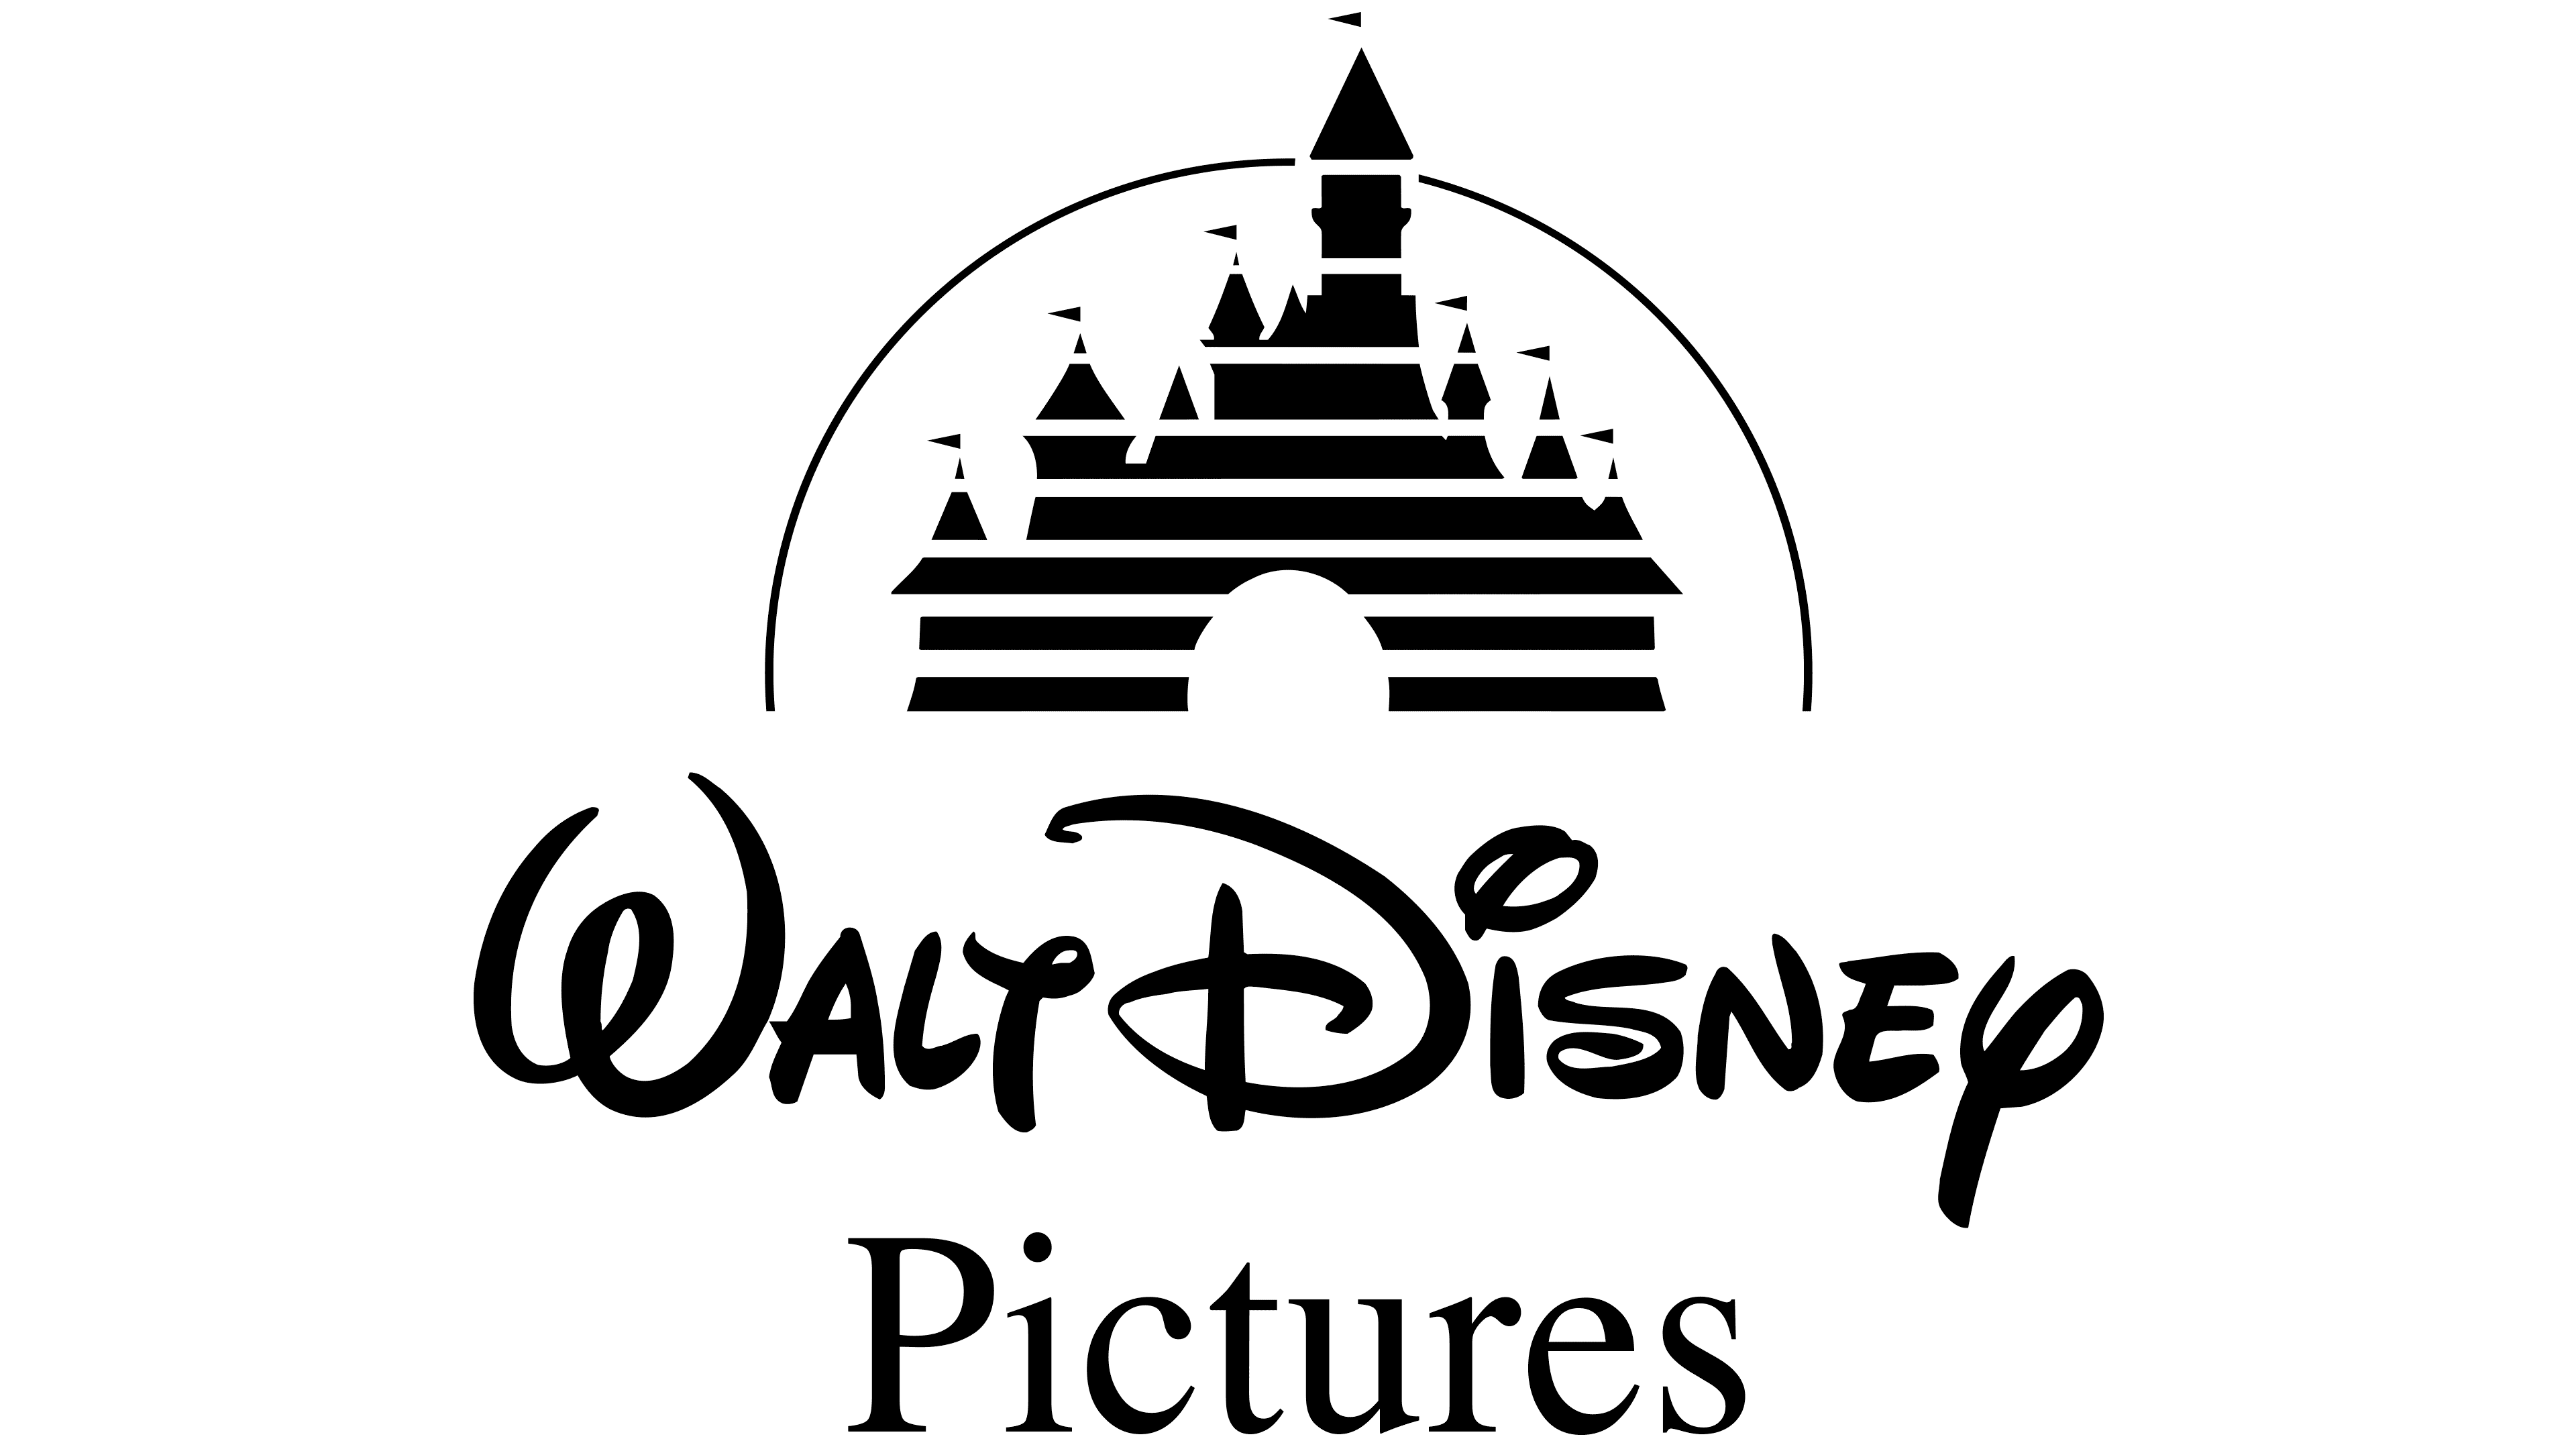 walt disney castle logo